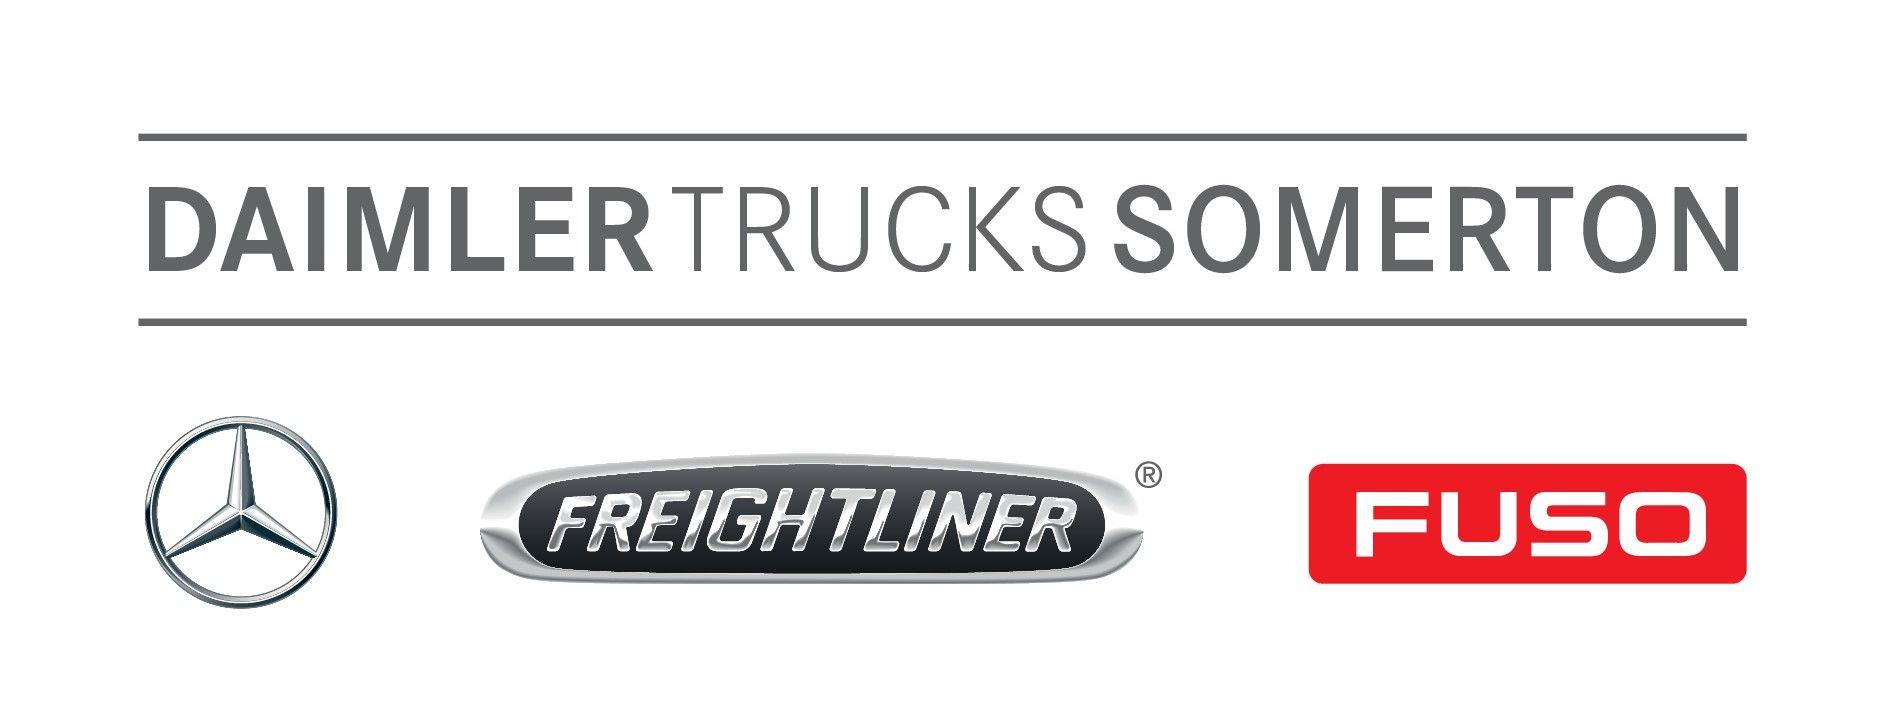 Daimler Trucks Logo - Meet the team. Daimler Trucks Somerton